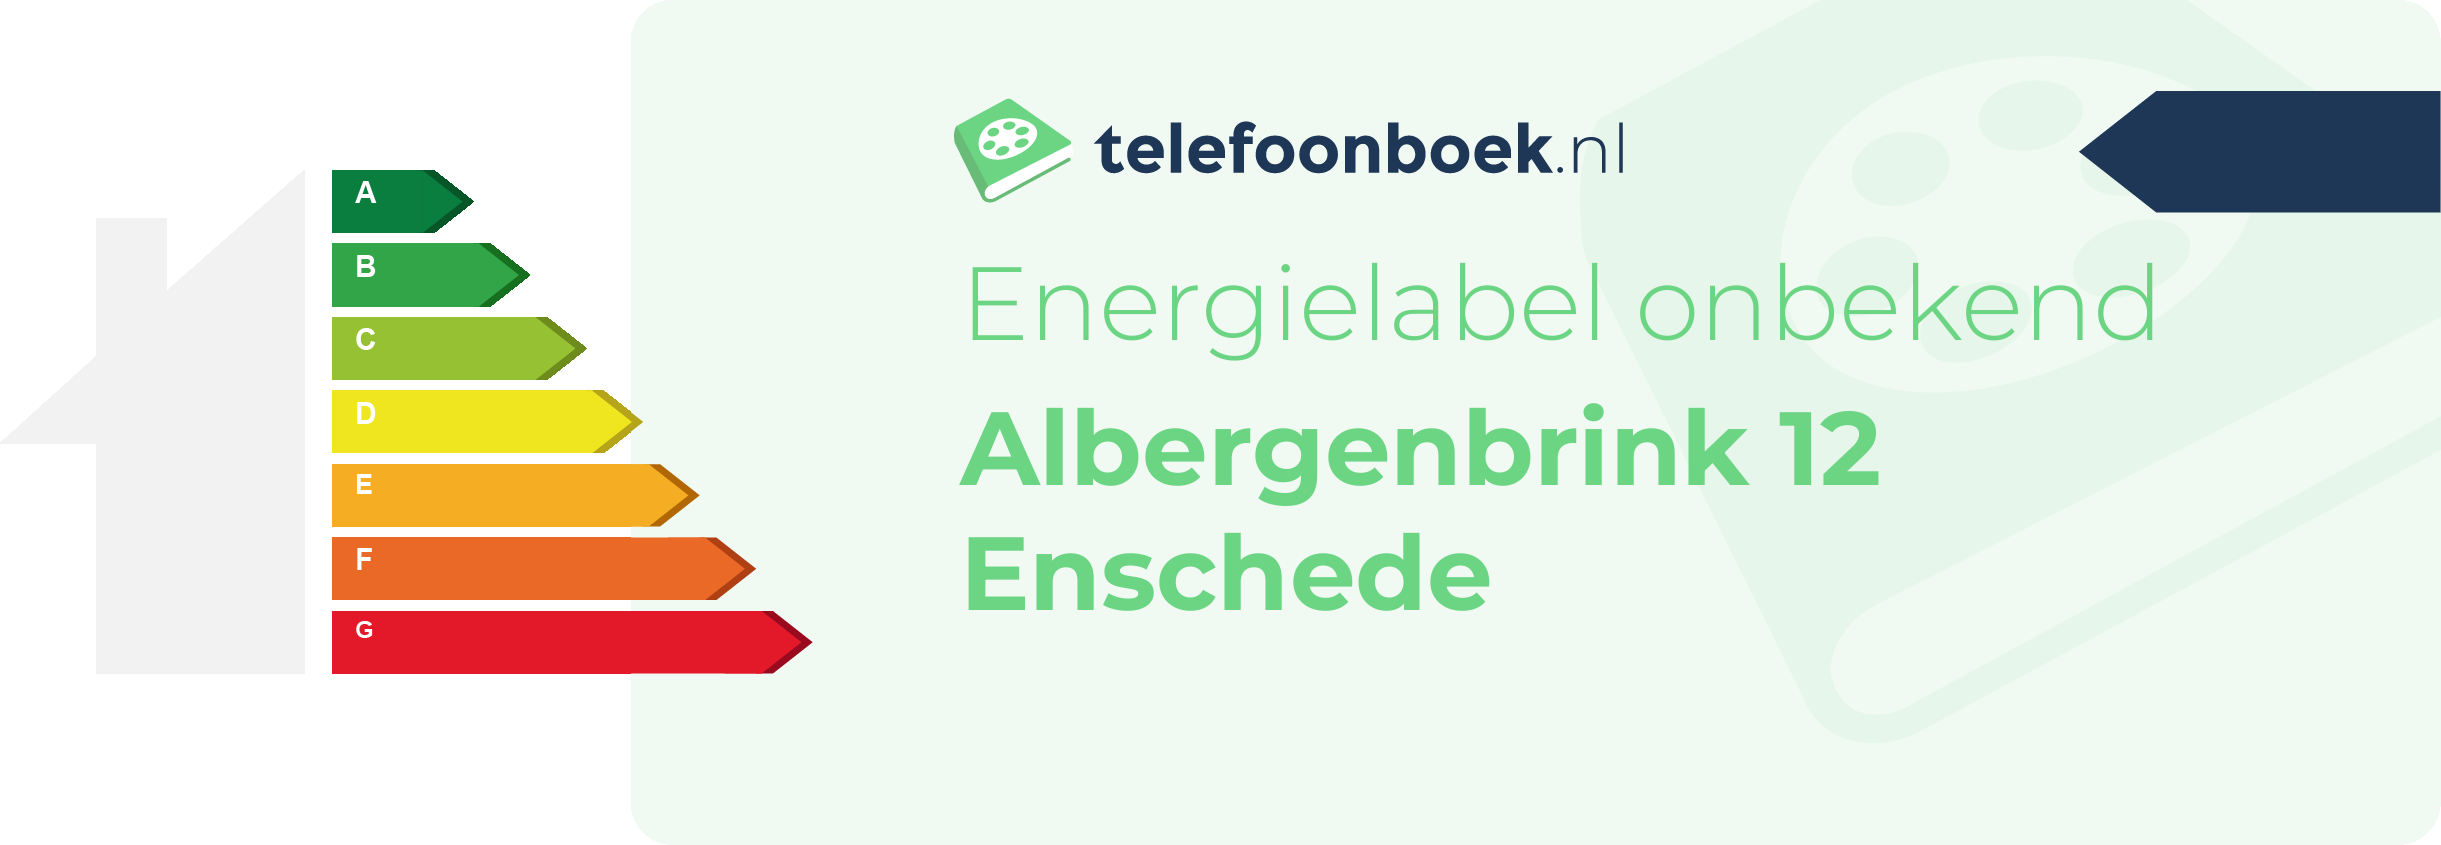 Energielabel Albergenbrink 12 Enschede